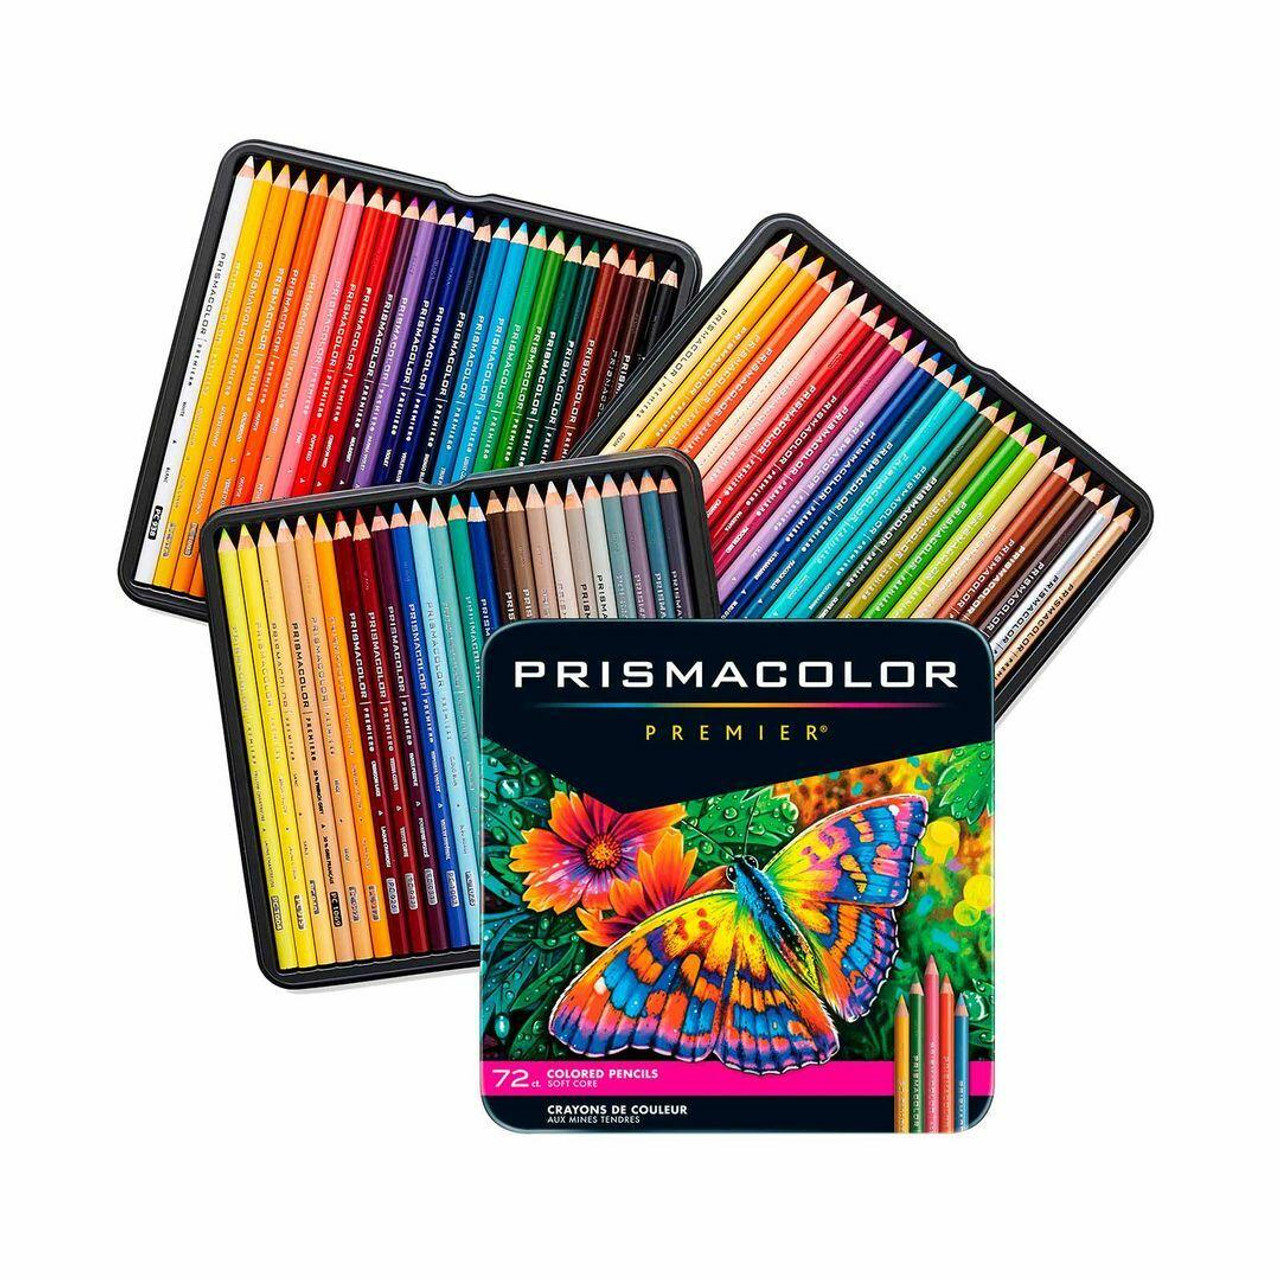 Prismacolor Premier Colored Pencils Review: Rich Pigments that Blend